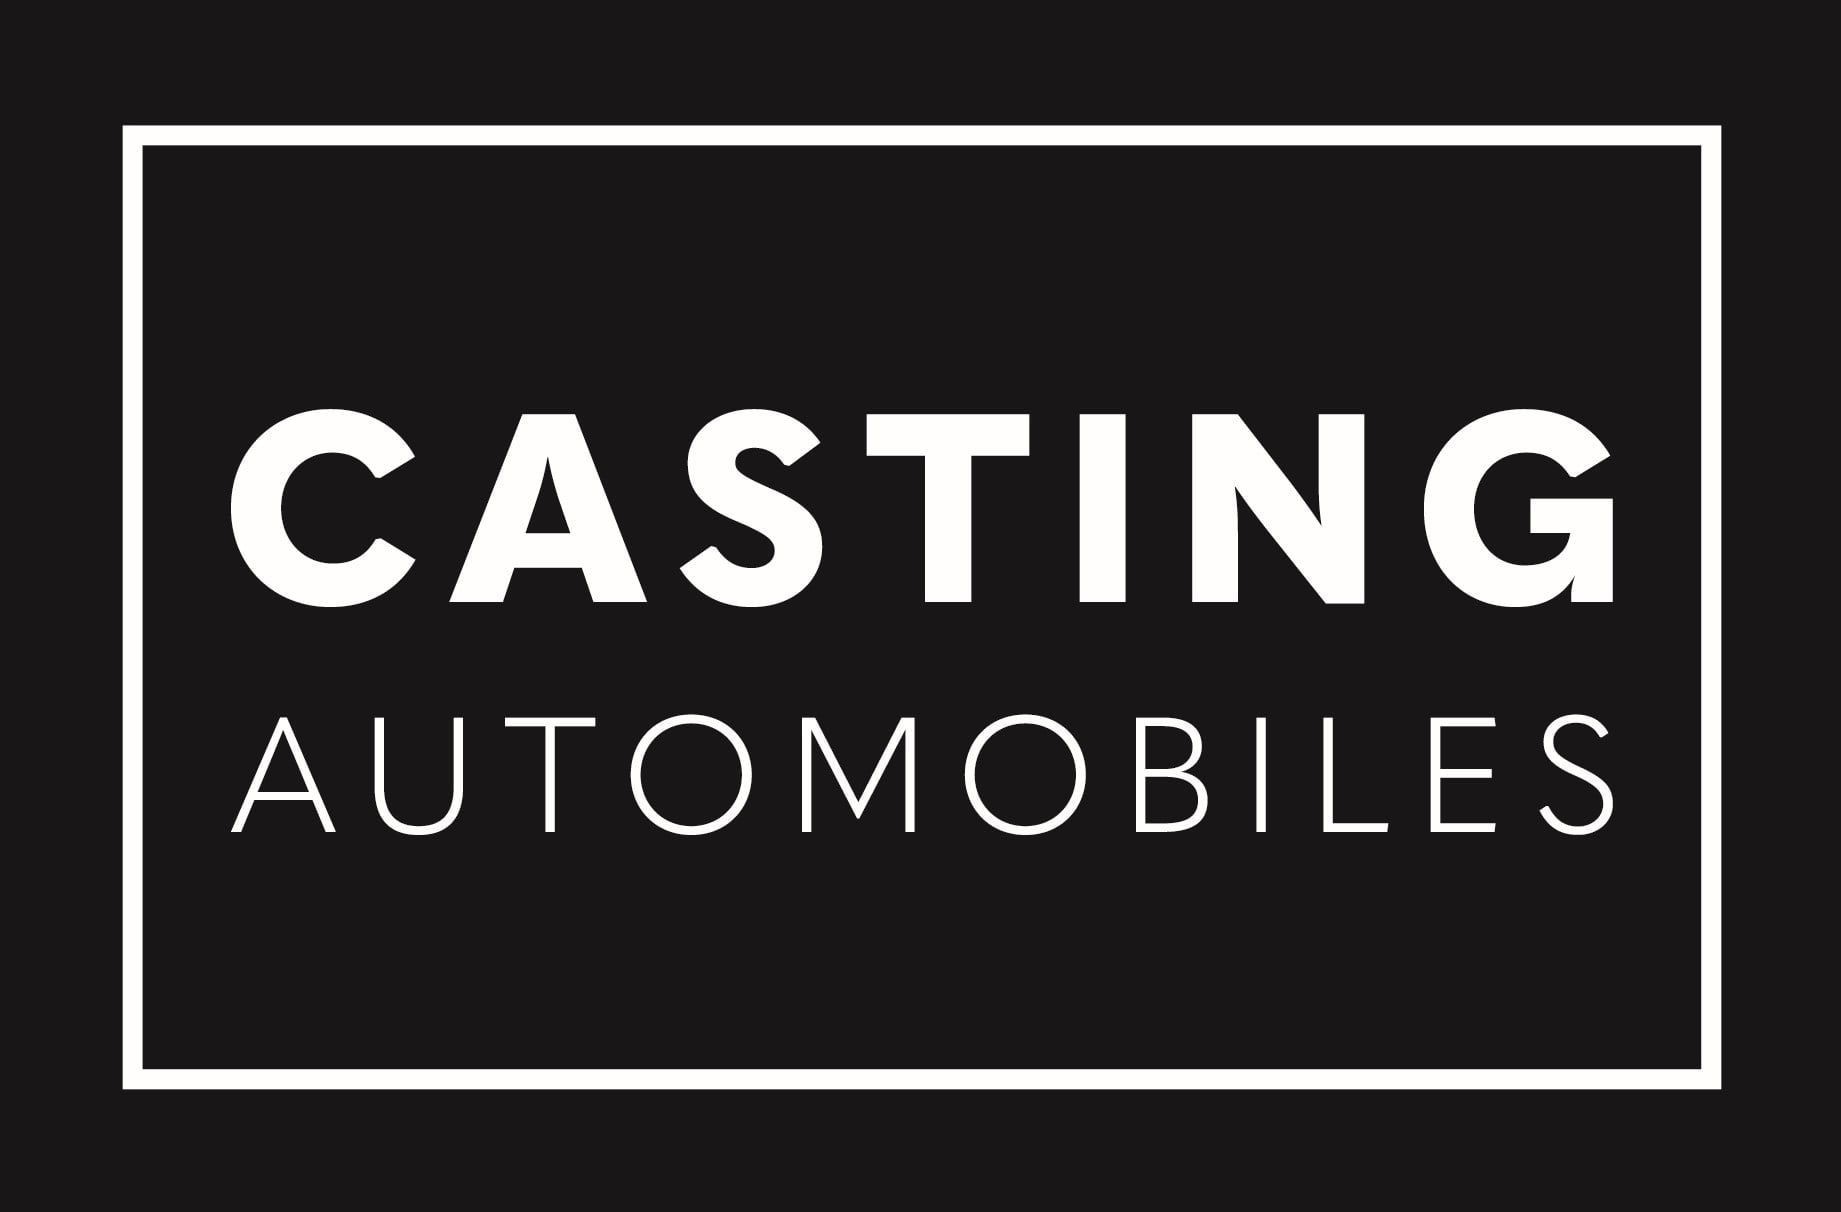 Casting Automobiles